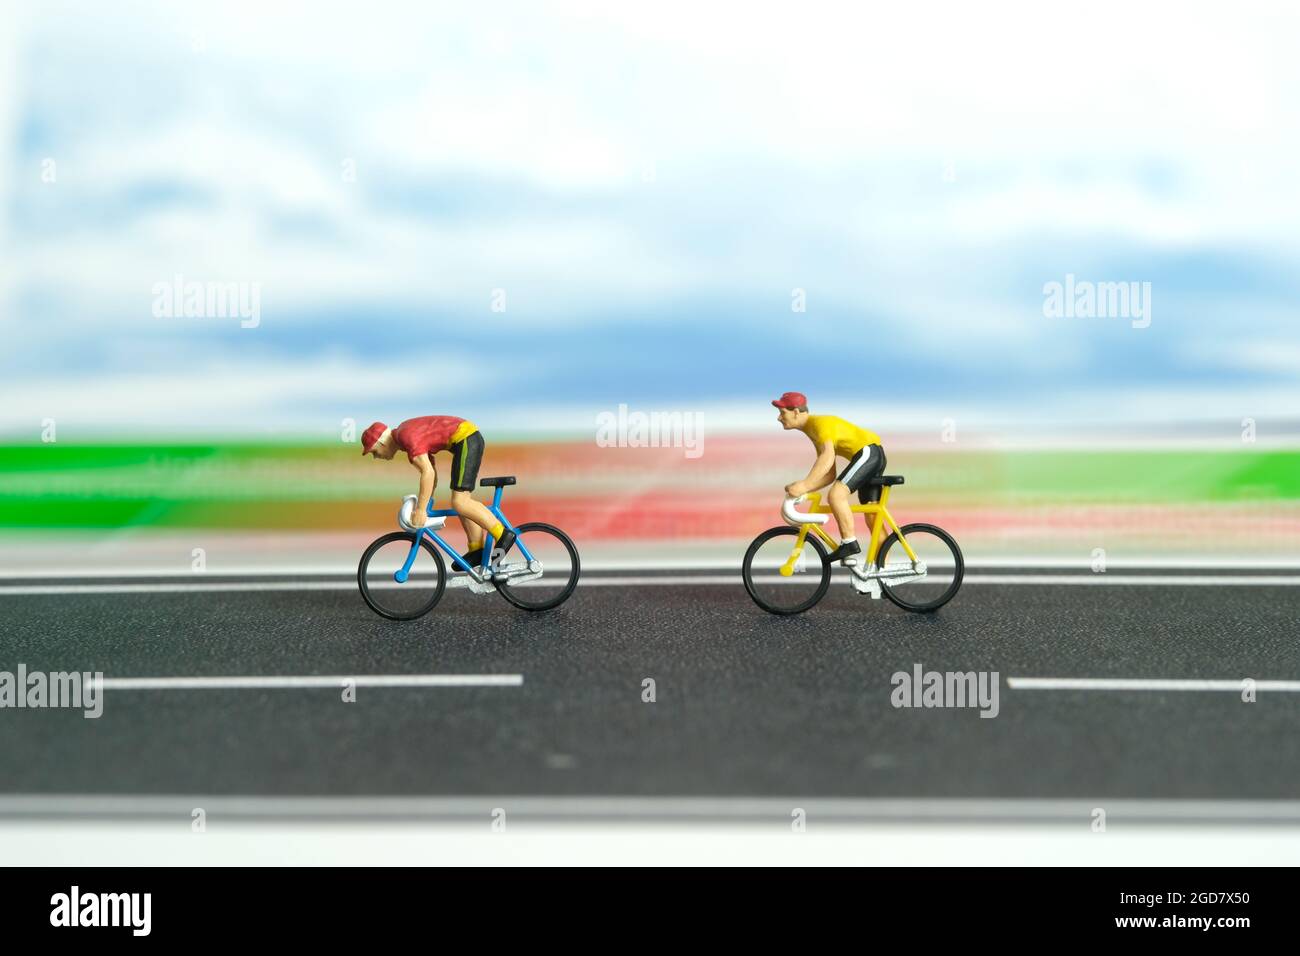 Miniatur Menschen Spielzeug Figur Fotografie. Fahrrad mit schneller Bewegung. Ein Biker, der mit hoher Geschwindigkeit auf einer Strecke radelt. Bildfoto Stockfoto